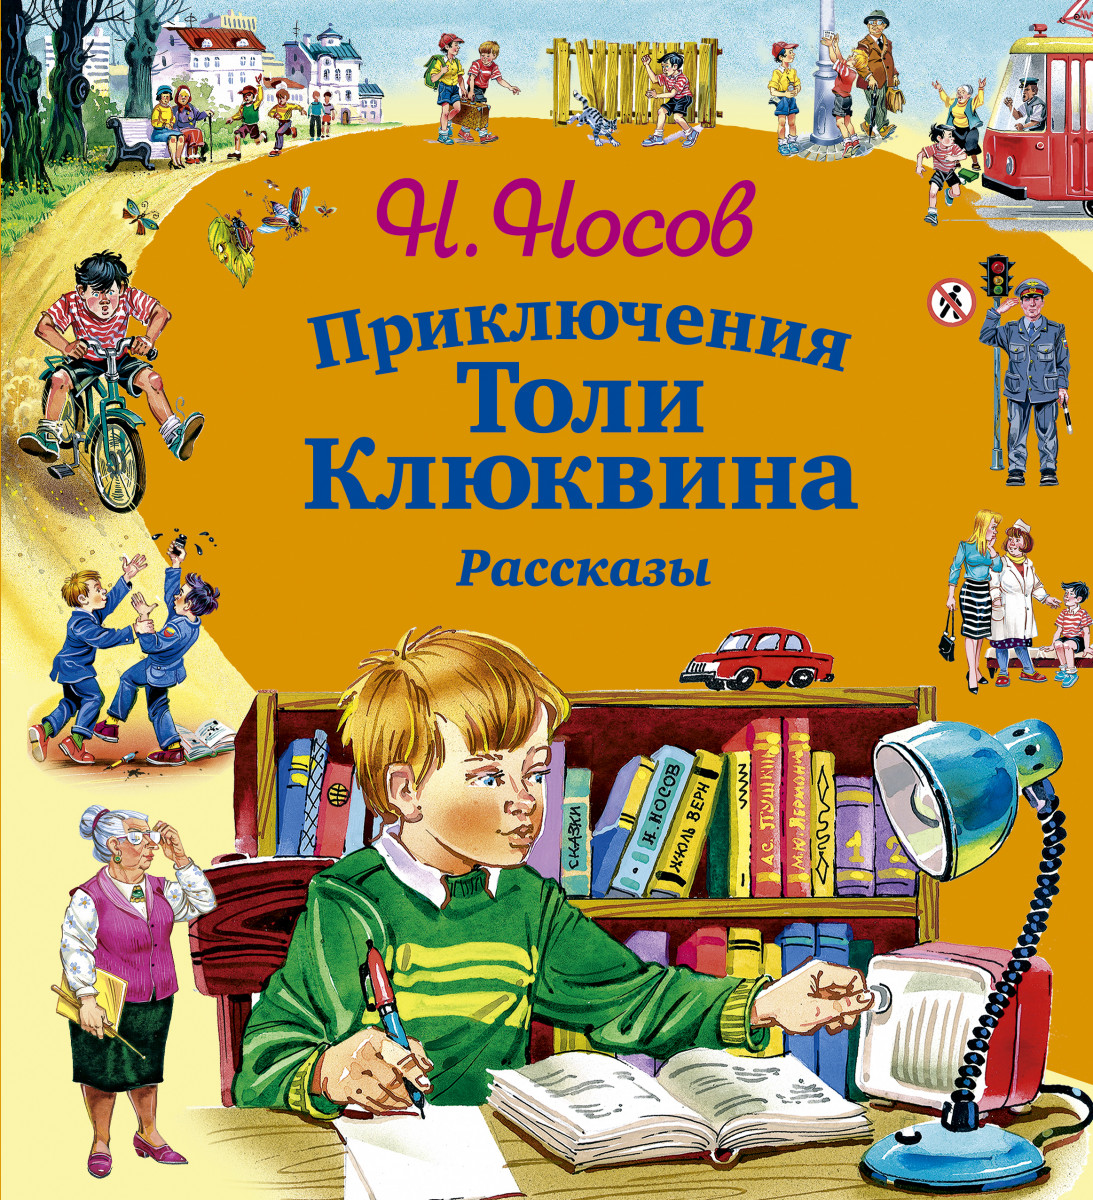 Произведения о детях 1 класс. Приключения толи Клюквина н.н Носов 1961. Носов приключения толи Клюквина обложка.